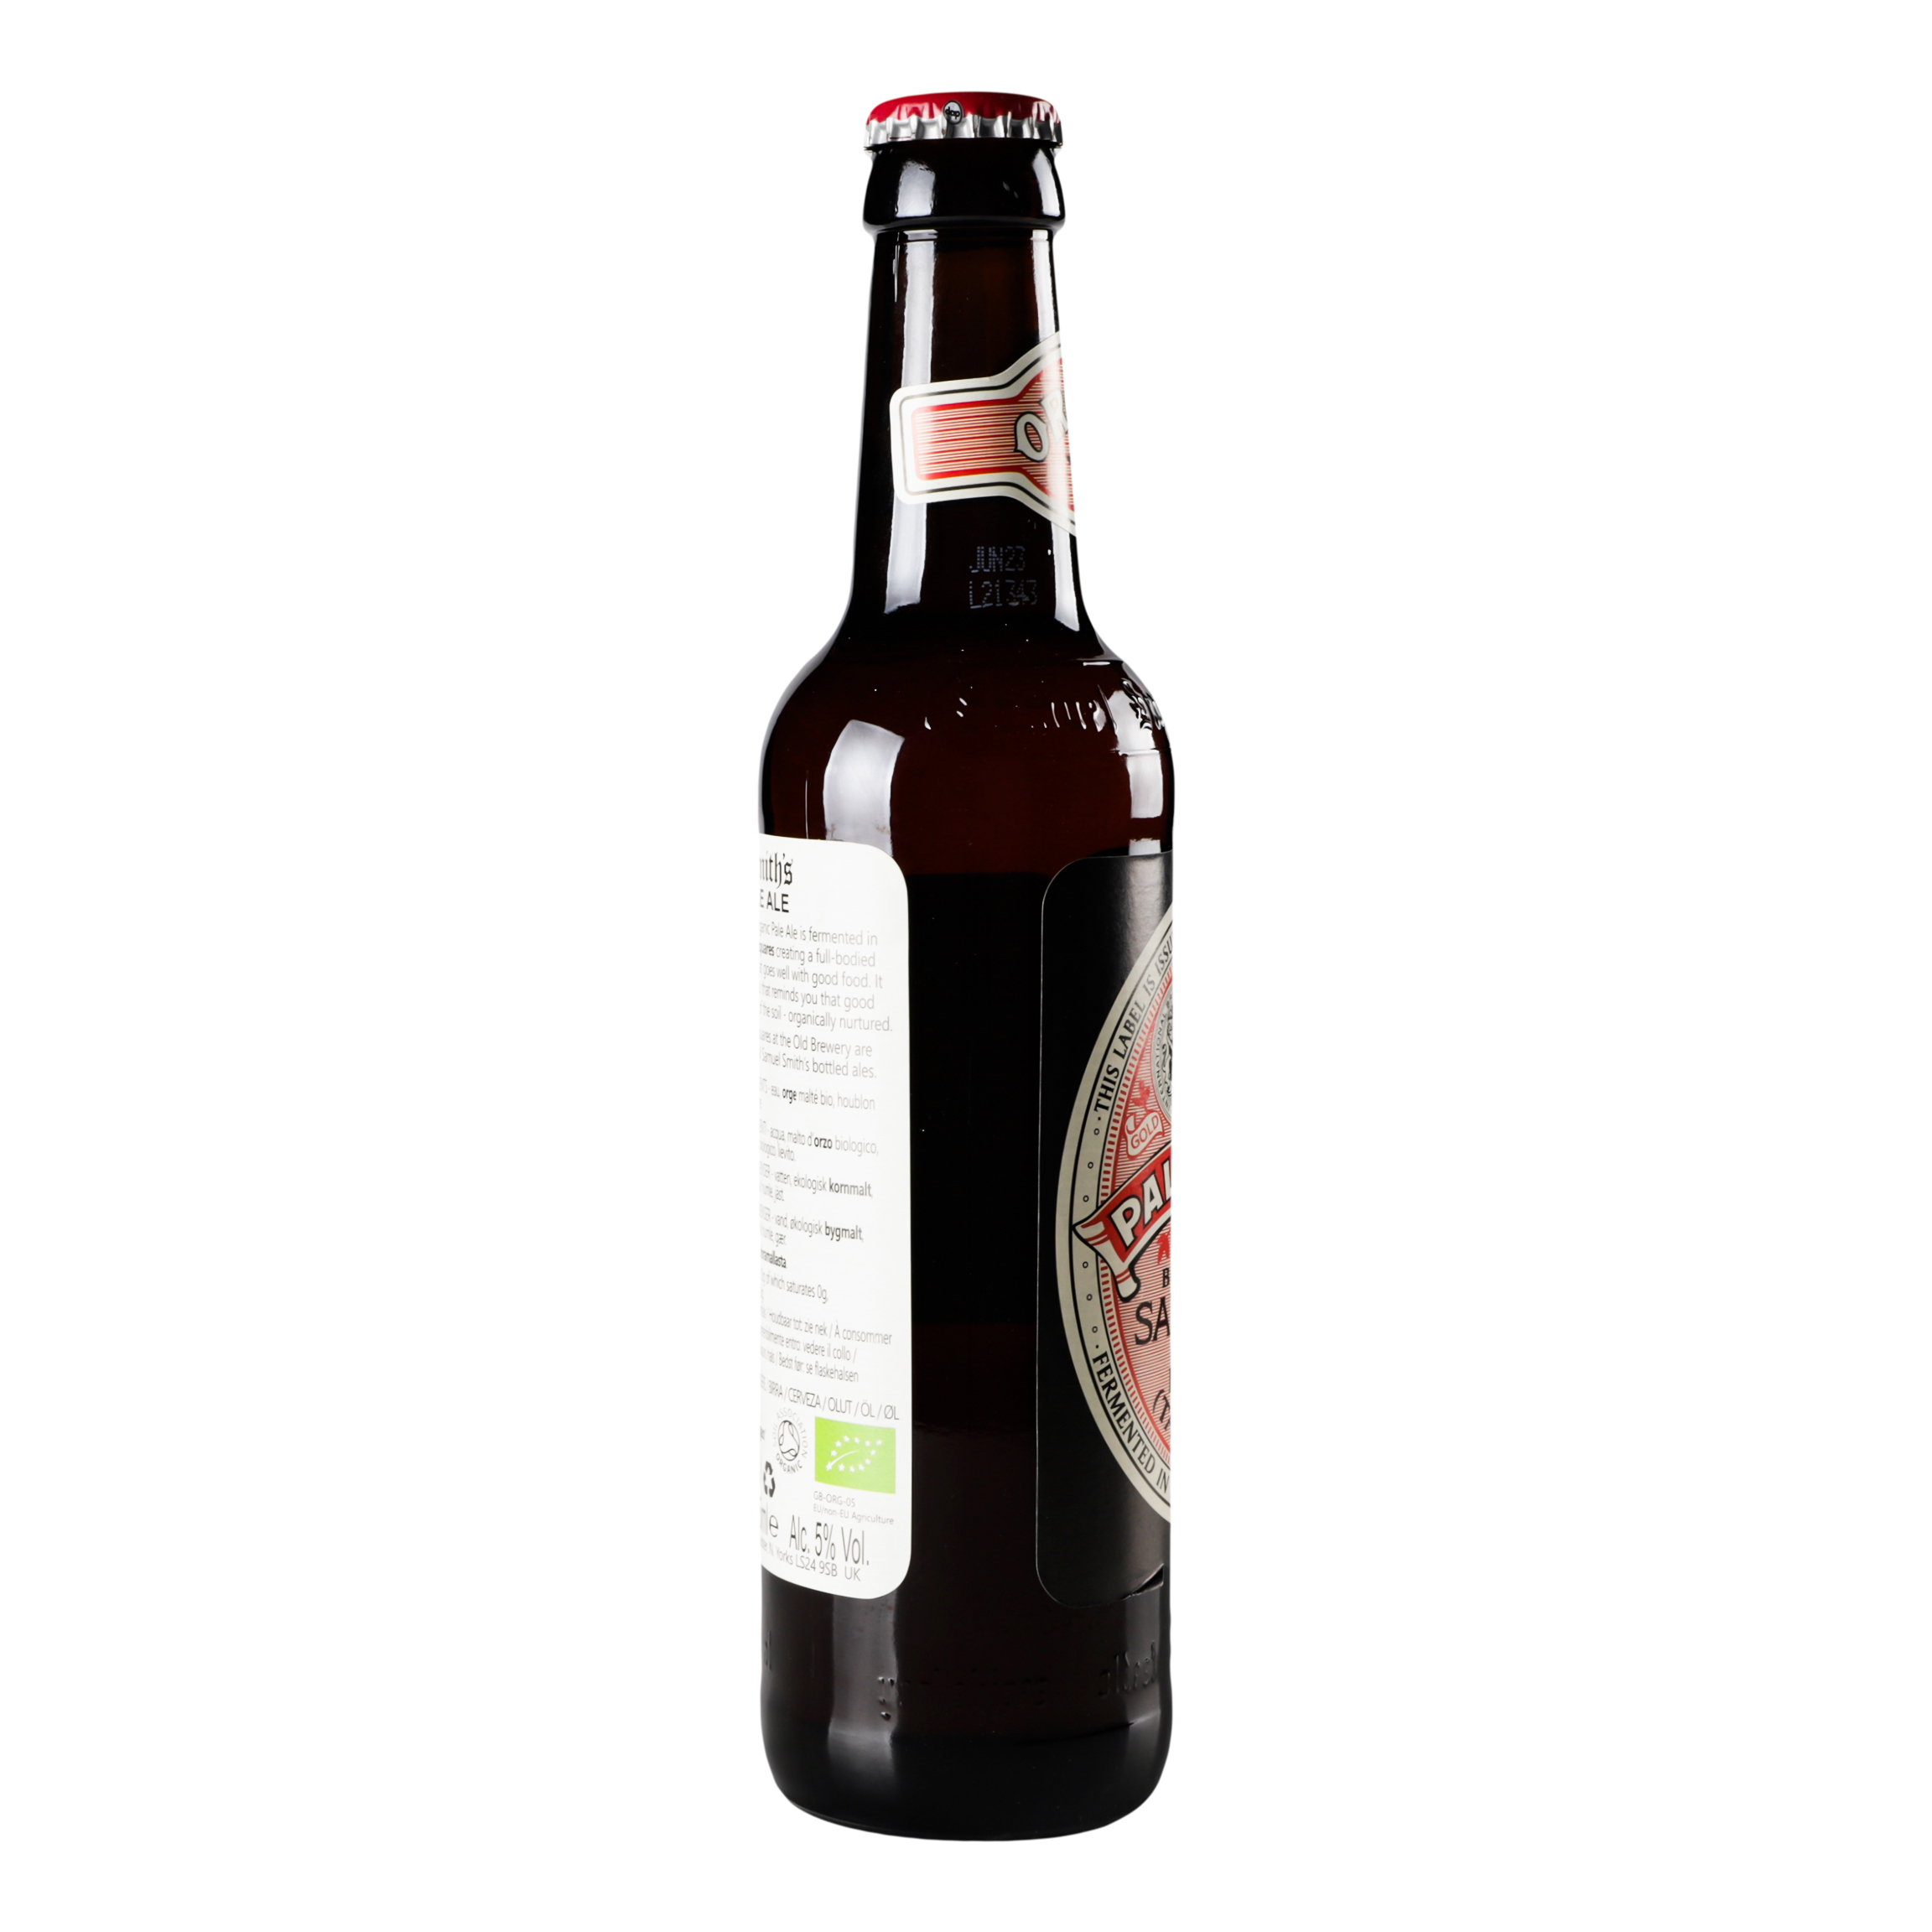 Пиво Samuel Smith Organic Pale Ale светлое, 5%, 0,355 л (789763) - фото 3